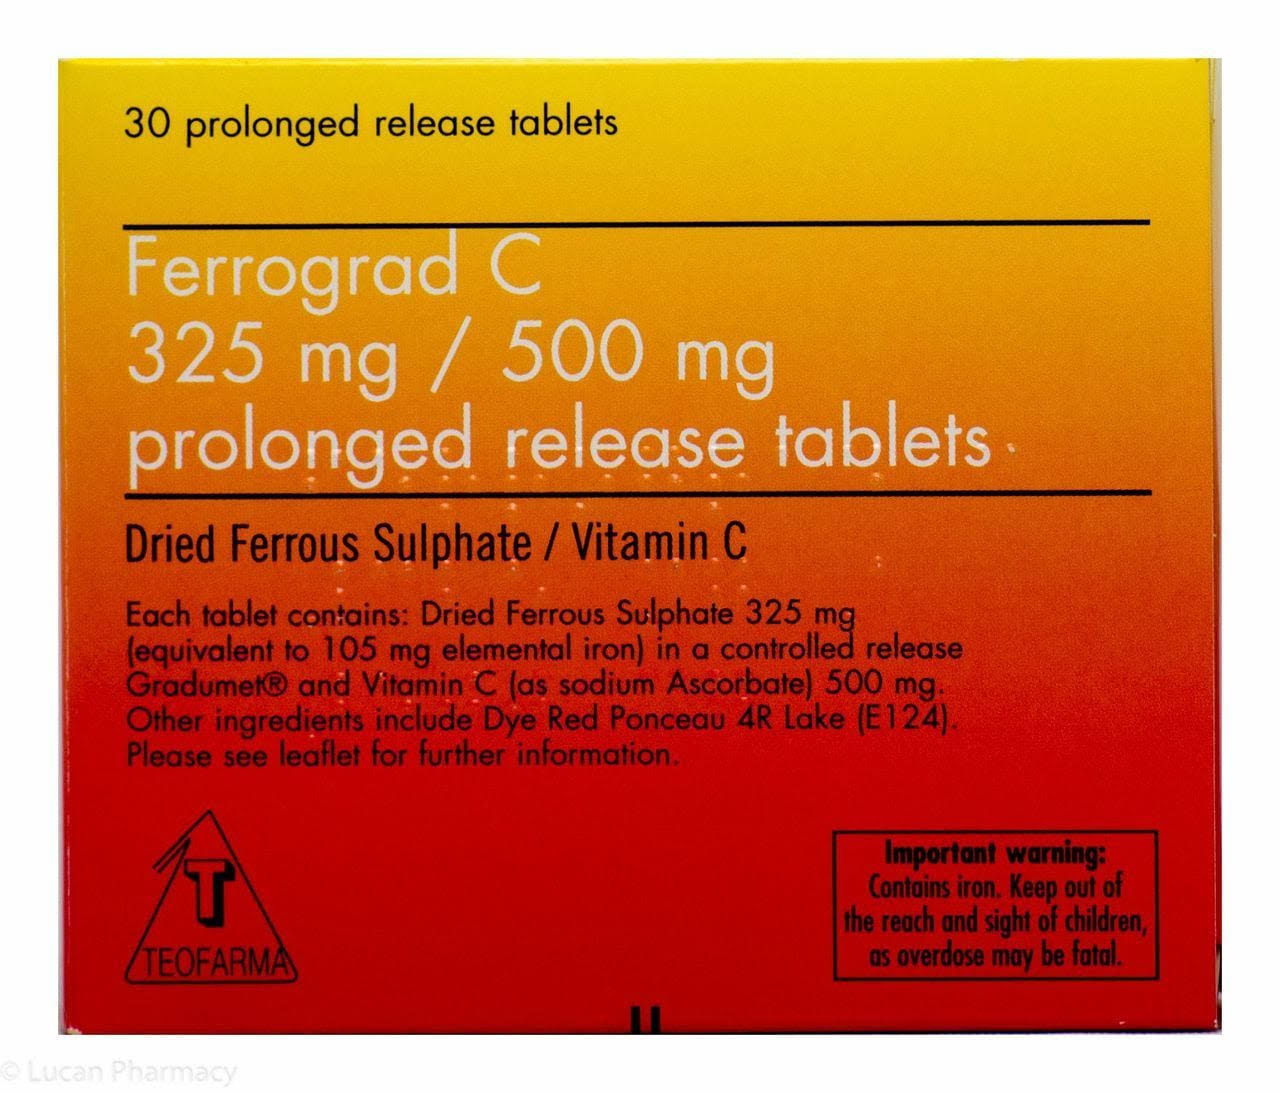 Ferrograd C Prolonged Release - 30 Tablets